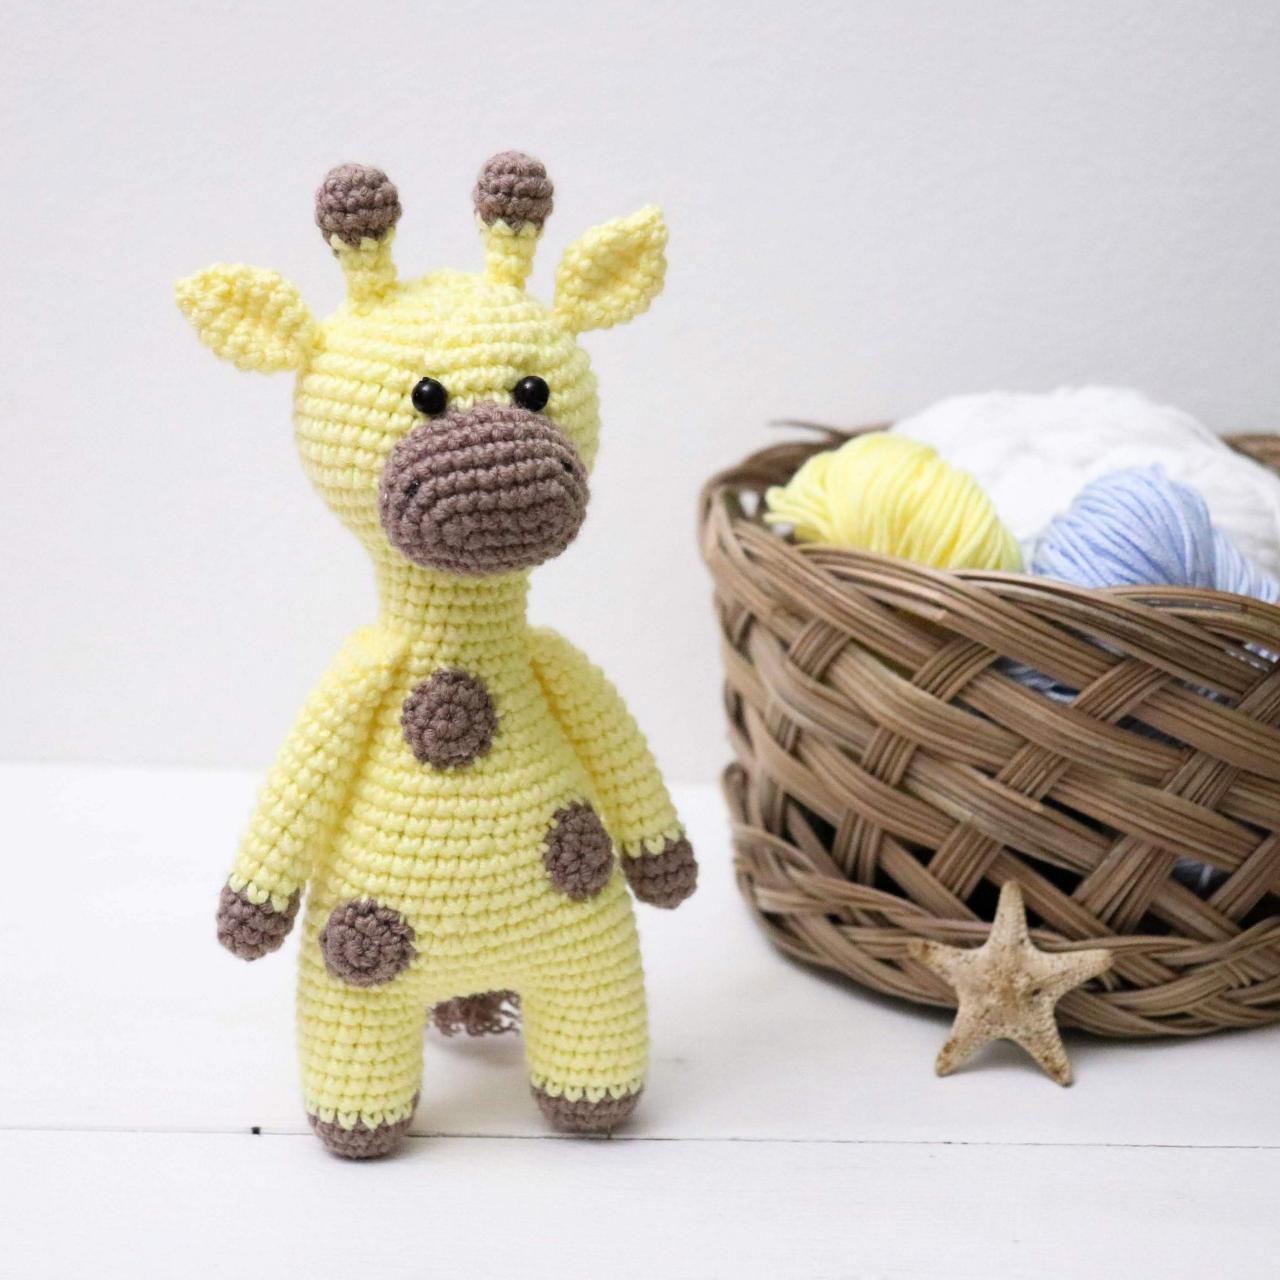 Amigurumi giraffe Crochet giraffe Plush giraffe Stuffed giraffe toy Crochet animal Baby soft toy Newborn baby gift Baby shower gift